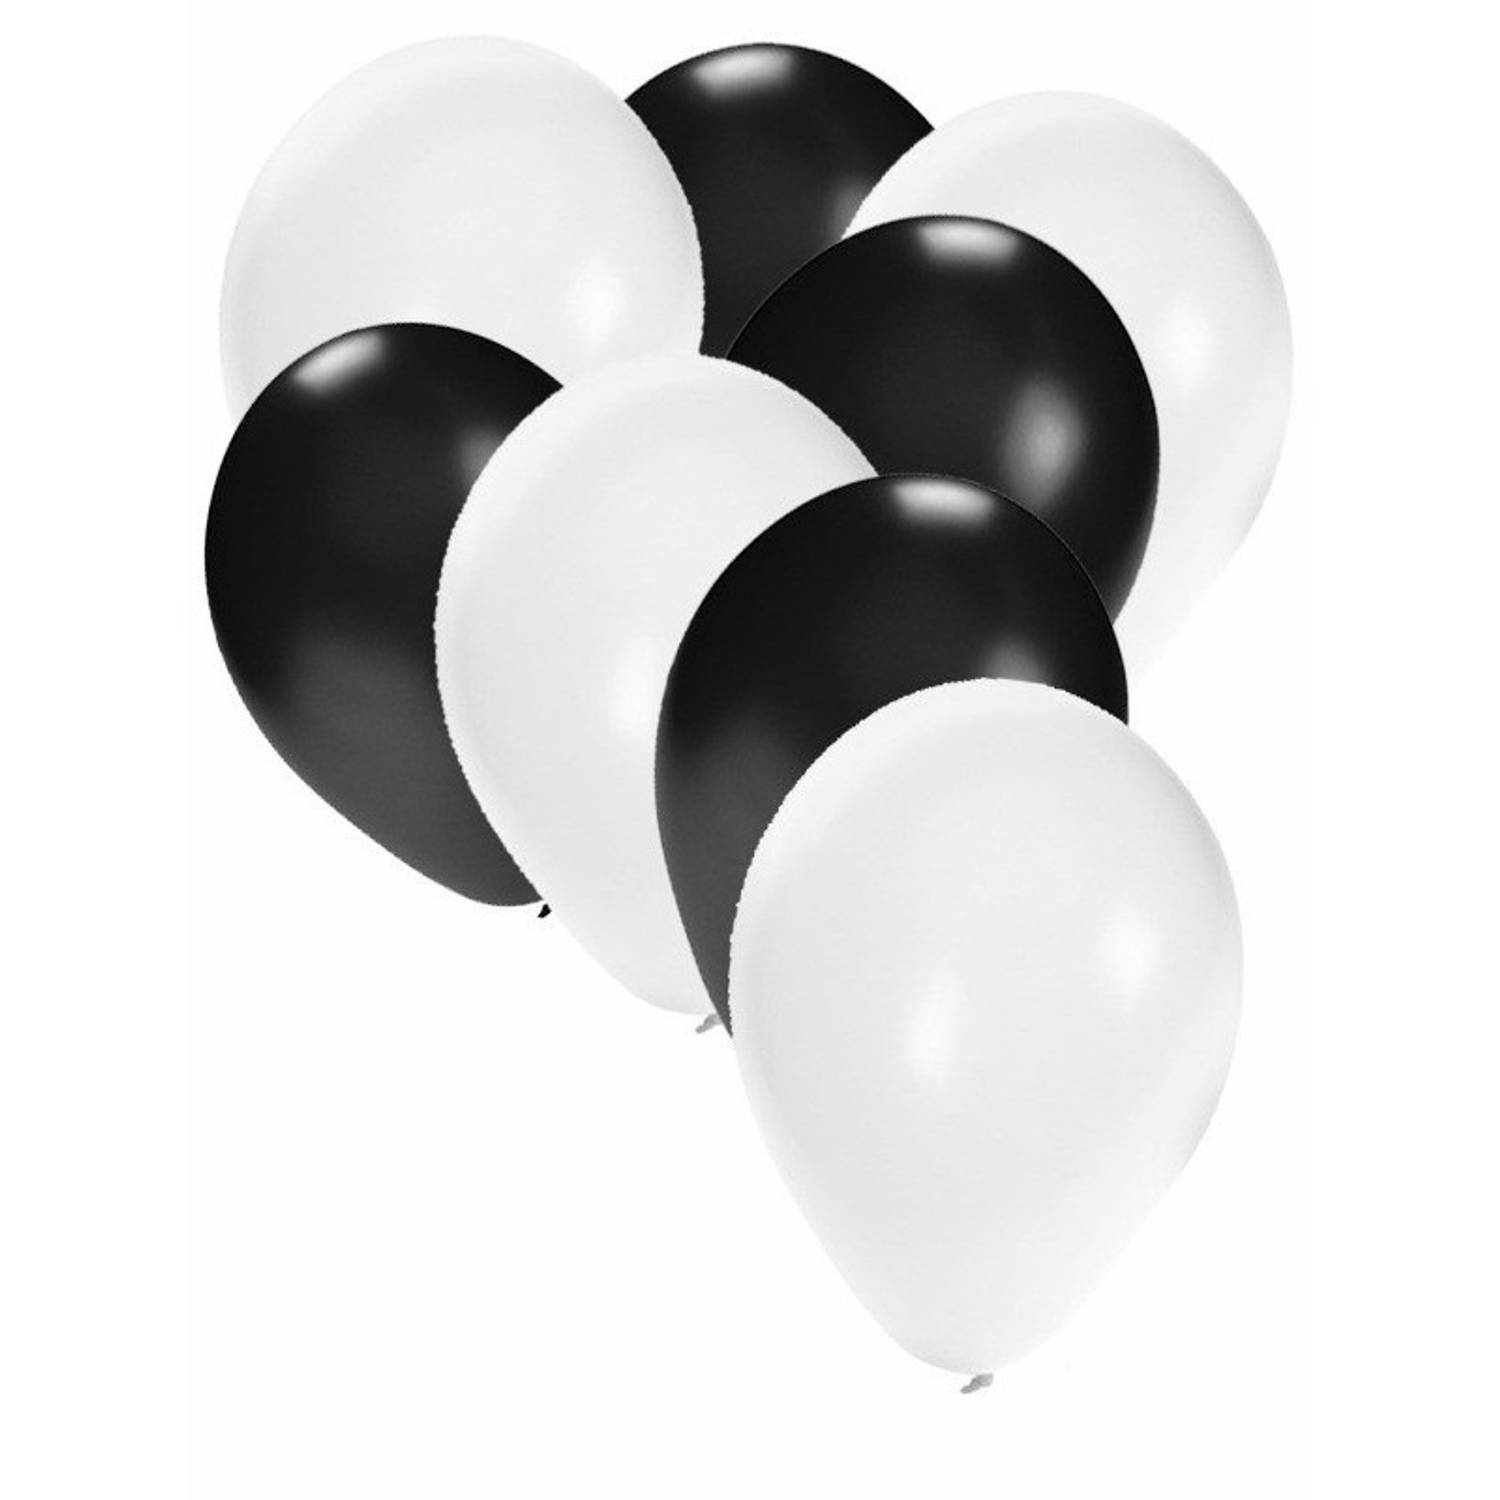 Beschrijvend Koninklijke familie Getuigen Witte en zwarte ballonnen 50 stuks - Ballonnen | Blokker